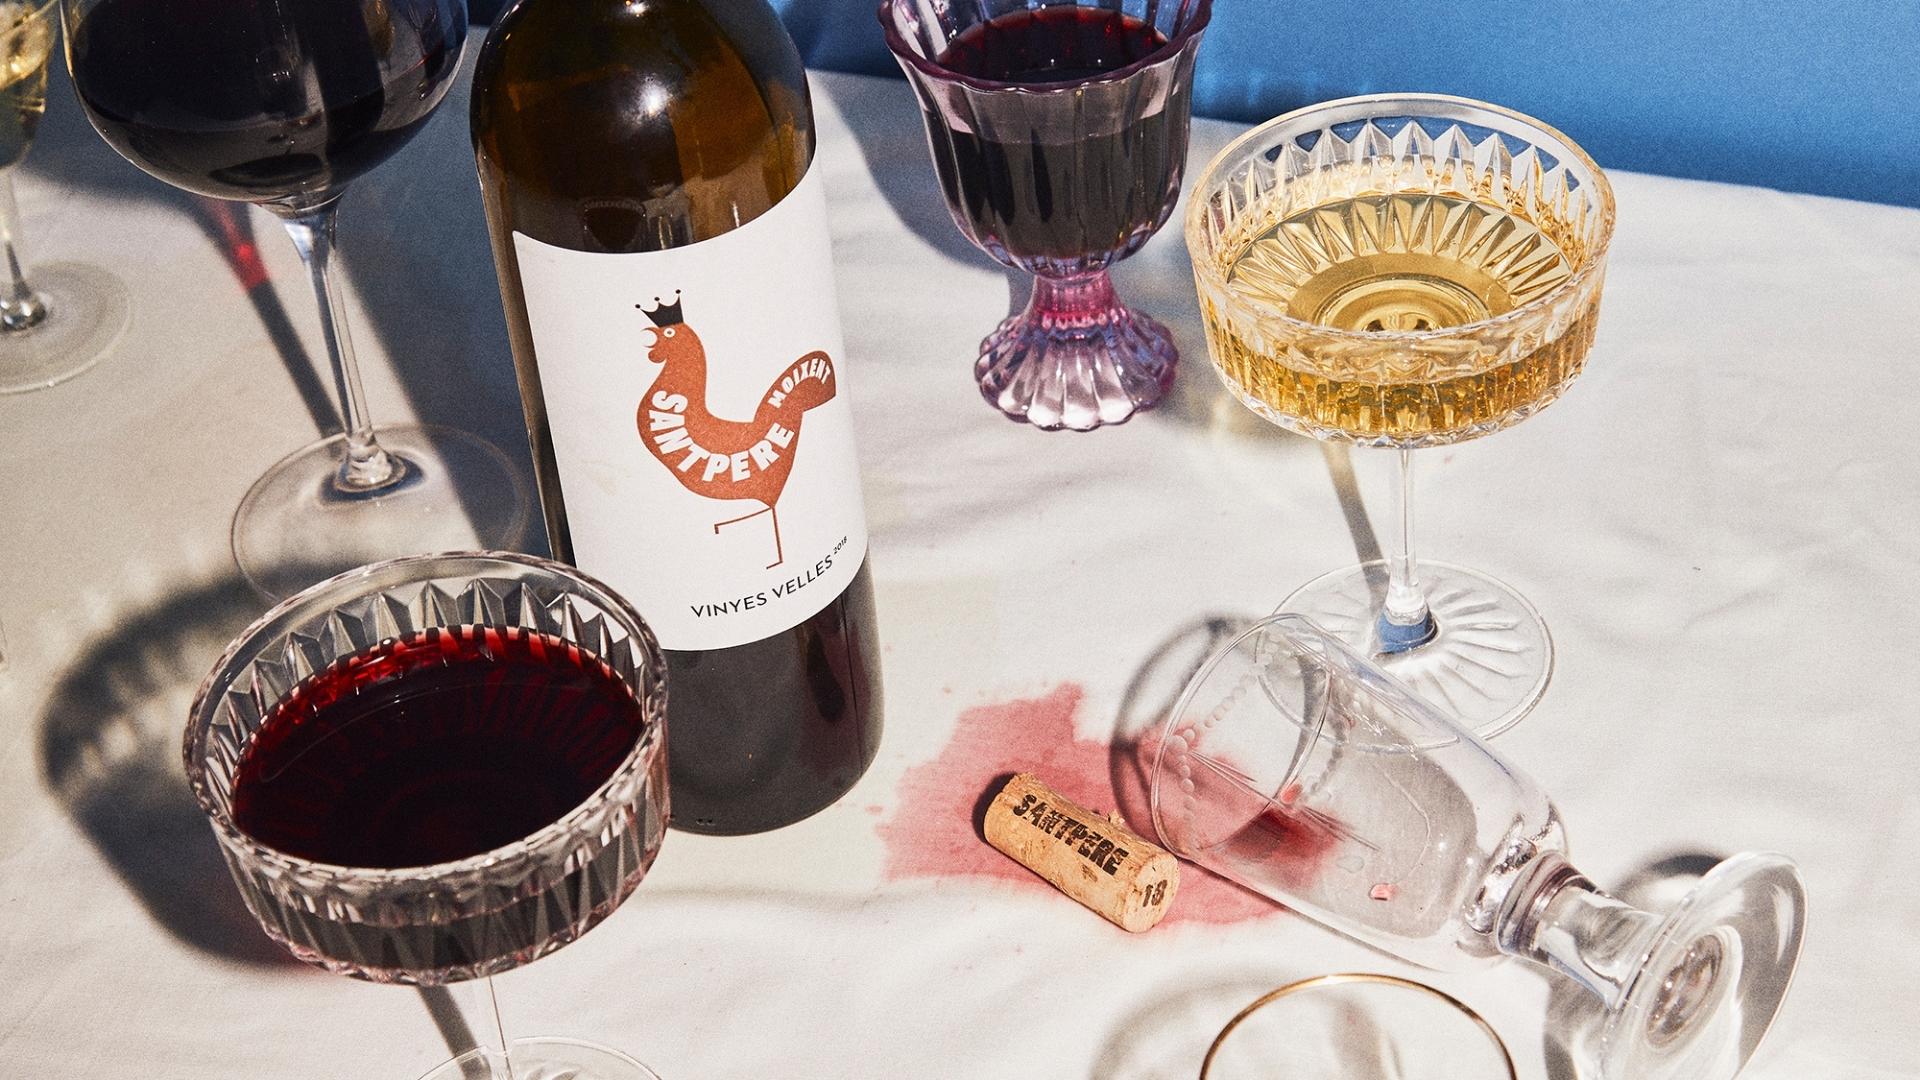 7 nietypowe wino łódź z dostawą sklep online moder wine club gdzie kupić dobre wina jak wybrać wino na prezent jakie wino kupić